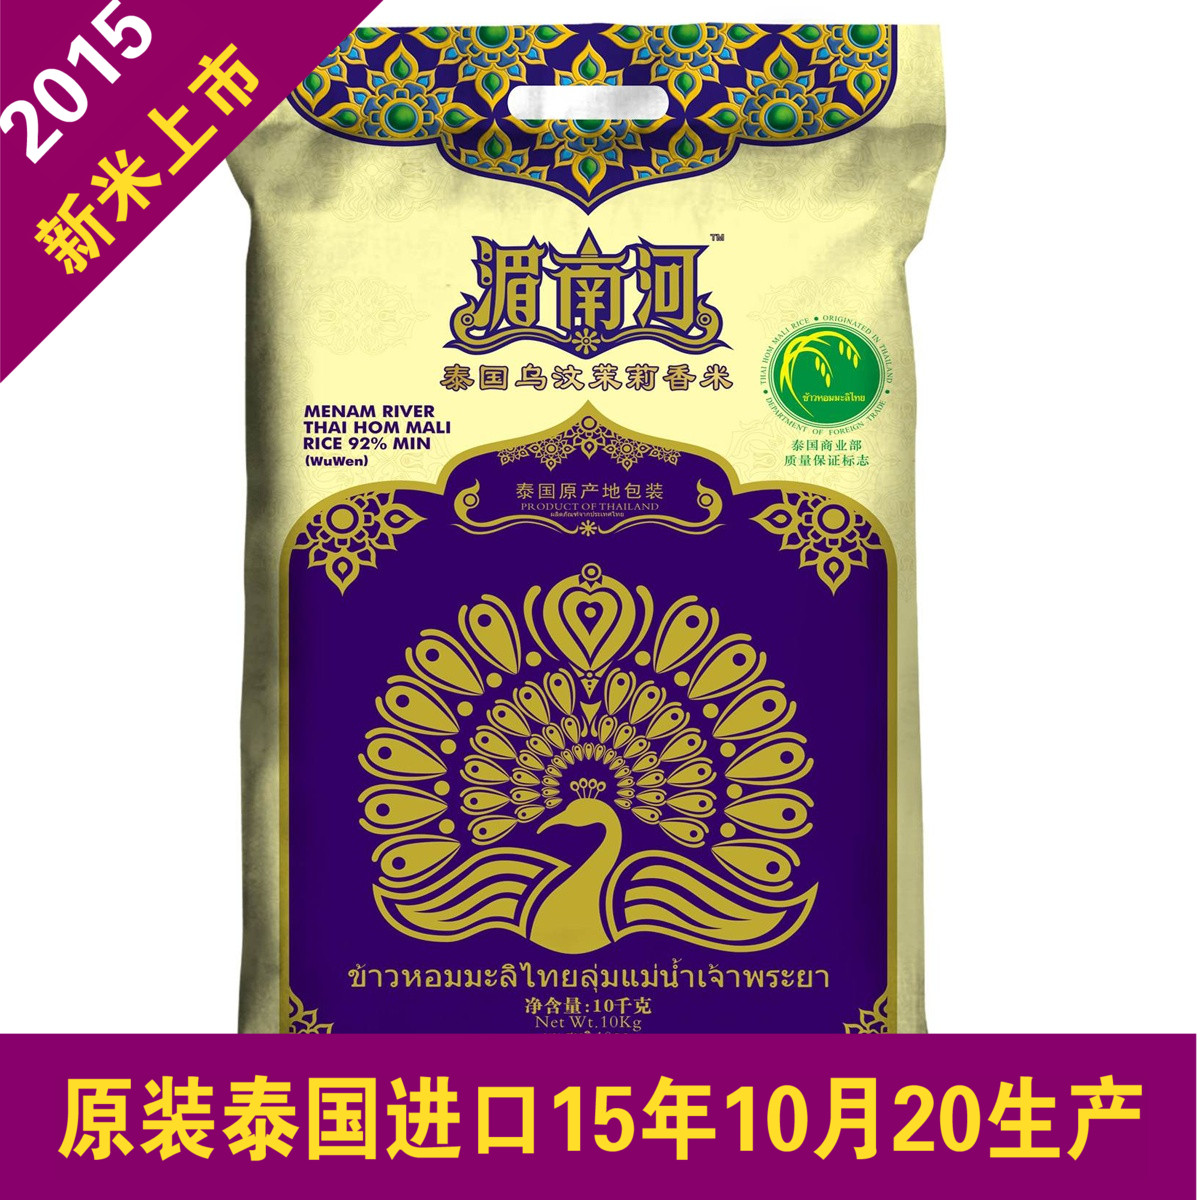 100%原装进口湄南河泰国乌汶茉莉香米10KG/袋 泰国香米 进口大米